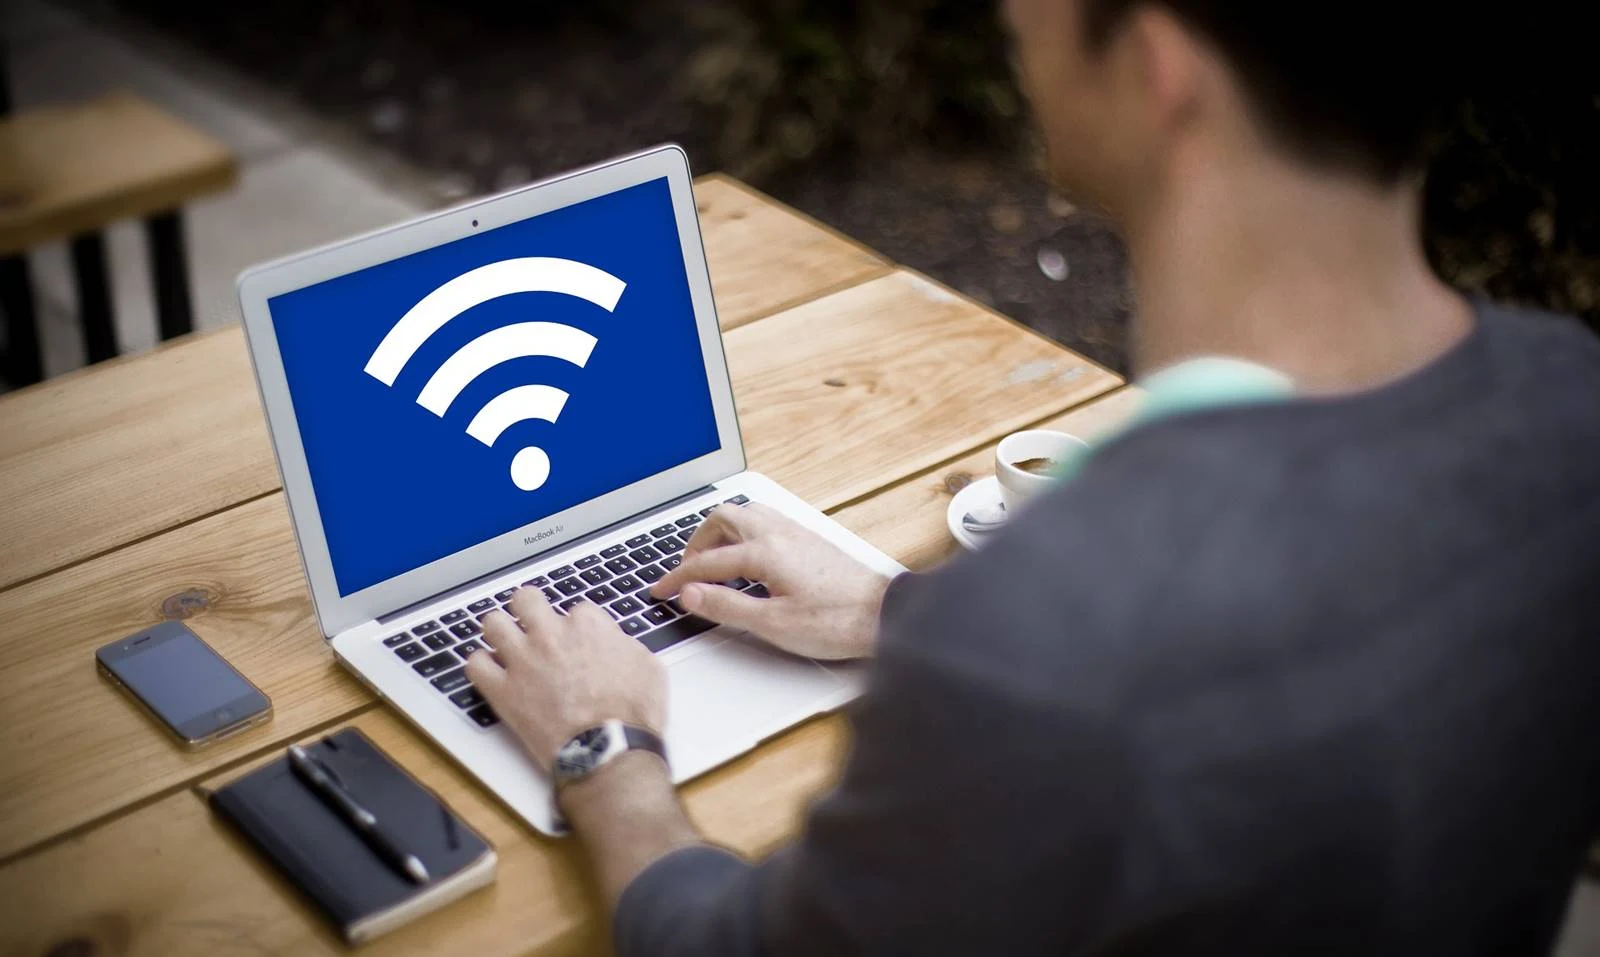 台灣-WiFi機-WiFi分享器-推薦-台灣租借WiFi-台灣4G吃到飽WiFi機-隨身WiFi-CP值-便宜WiFi機-4G上網-網路